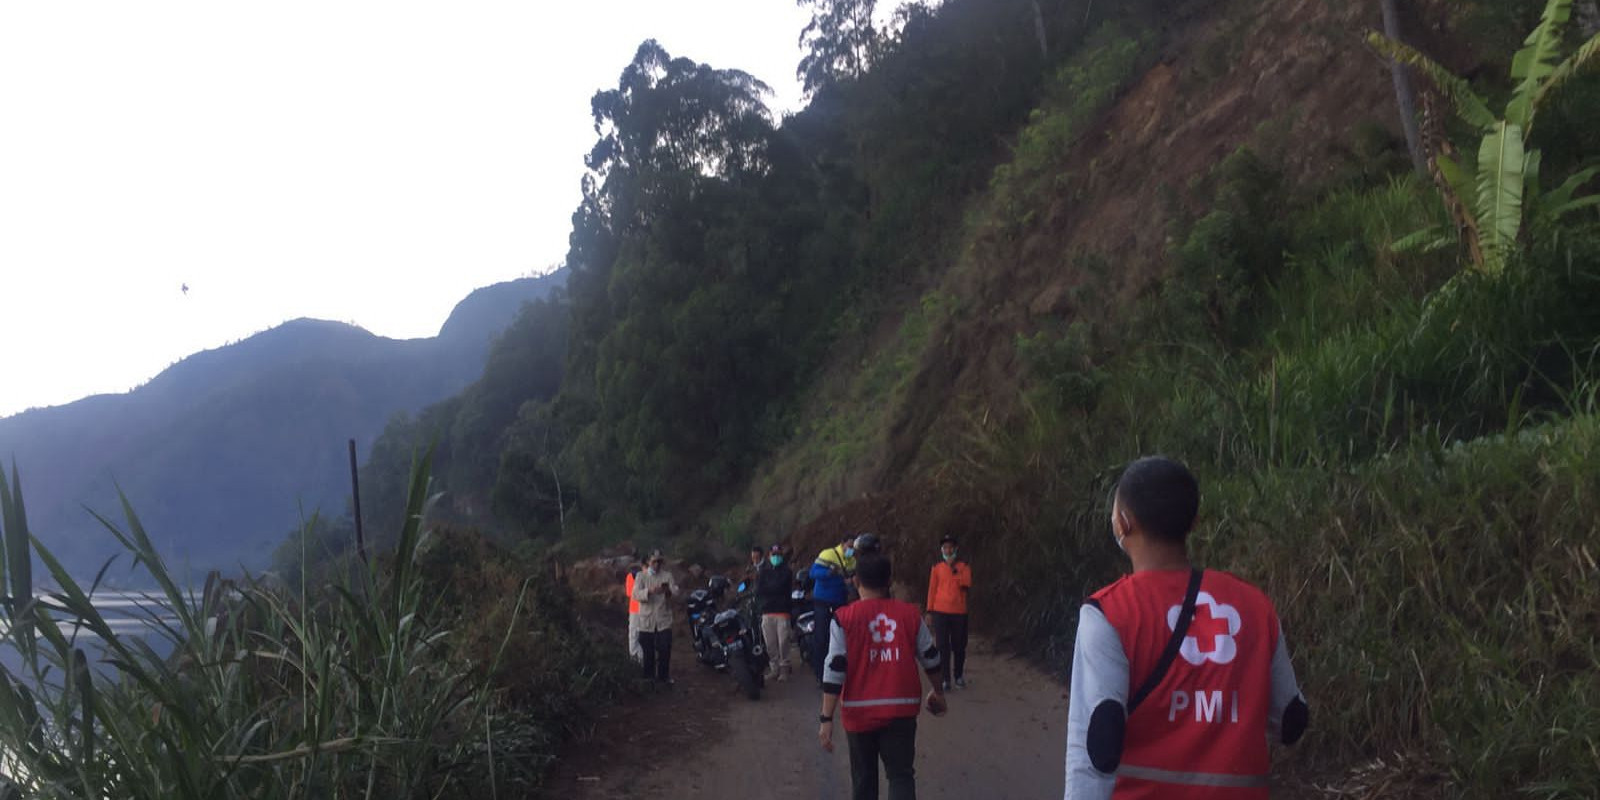 [UPDATE]: Gempabumi M 4,8 Bali Juga Menyebabkan Longsoran dan Reruntuhan Batu, Berikut Analisisnya